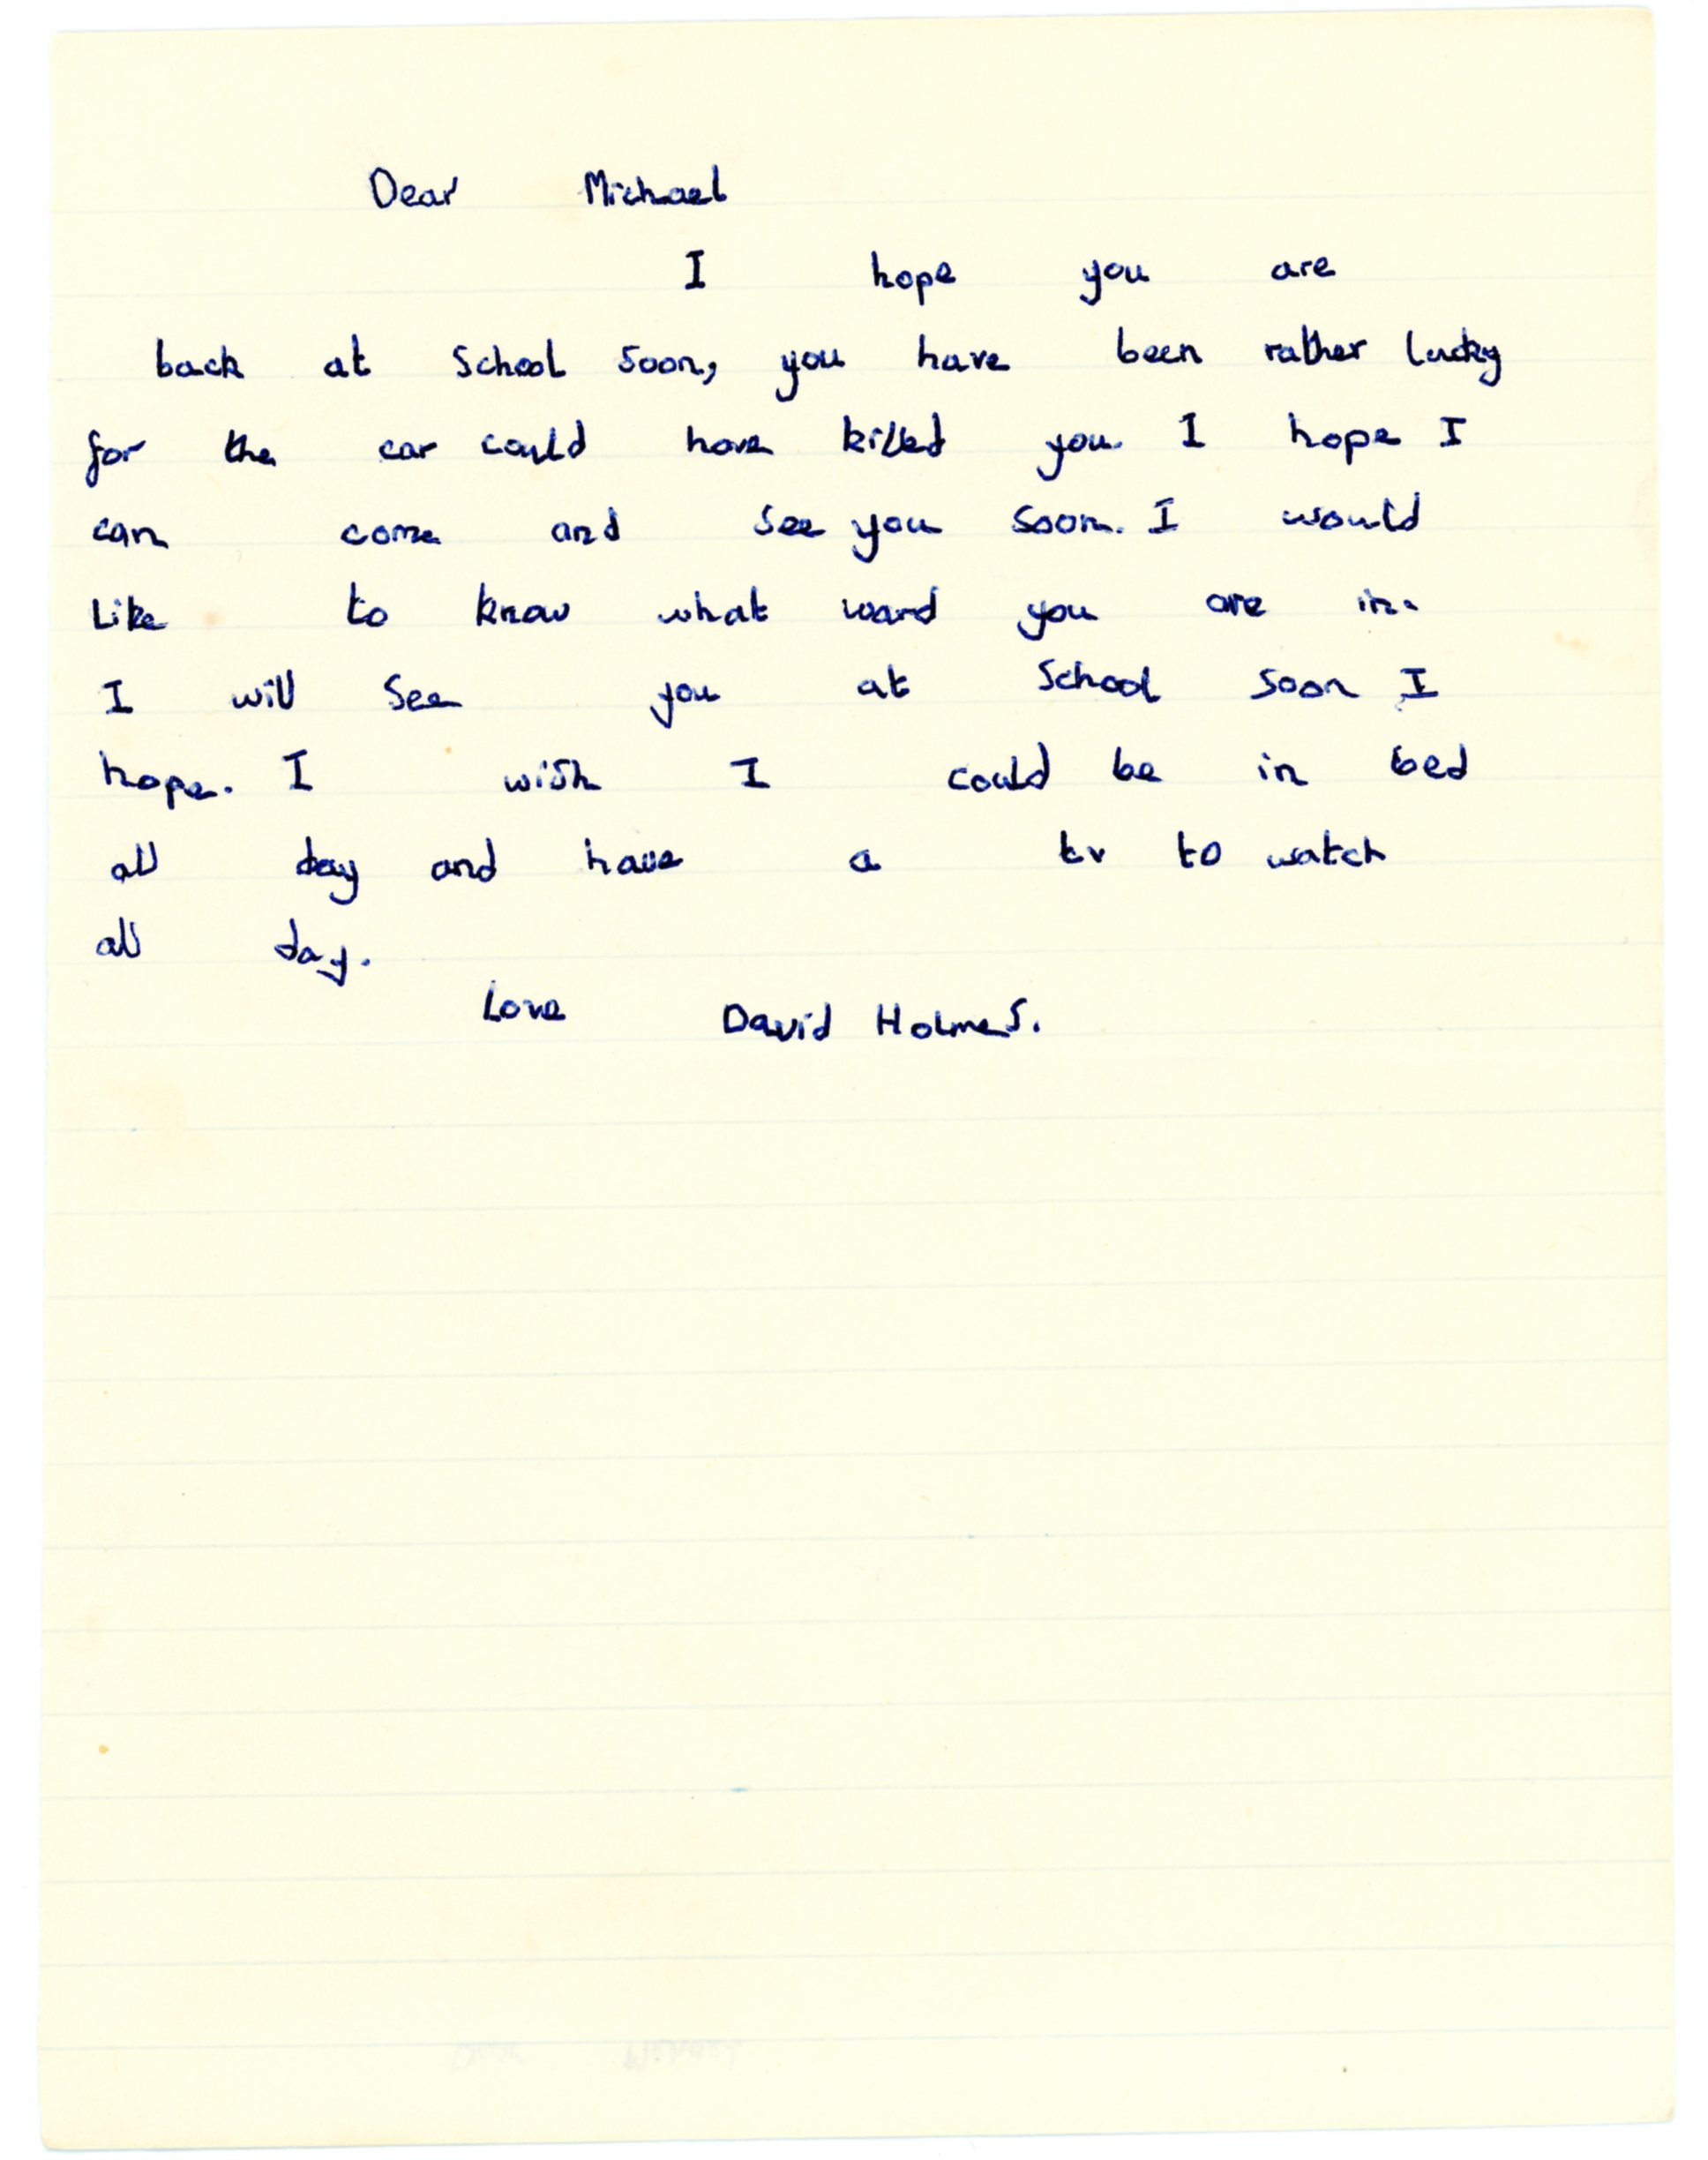 David Holmes' original letter